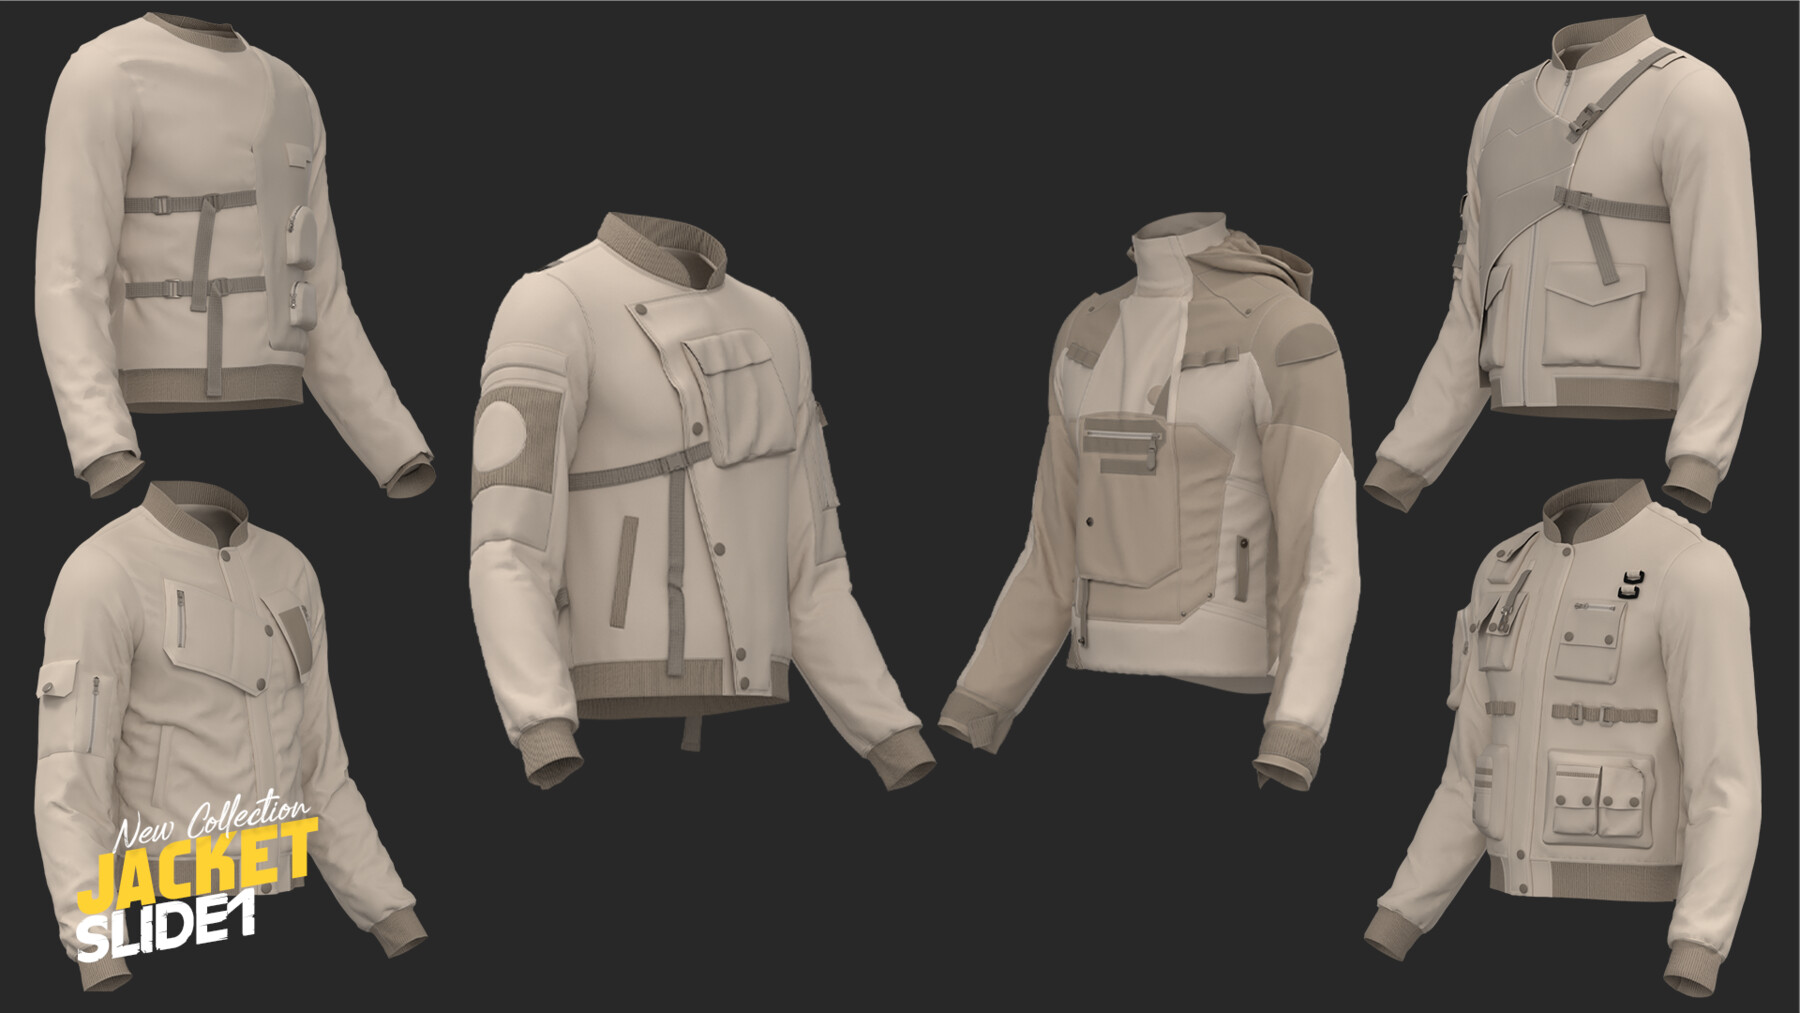 ArtStation - 110 models of fimale&male's jacket megapack 85%off ...